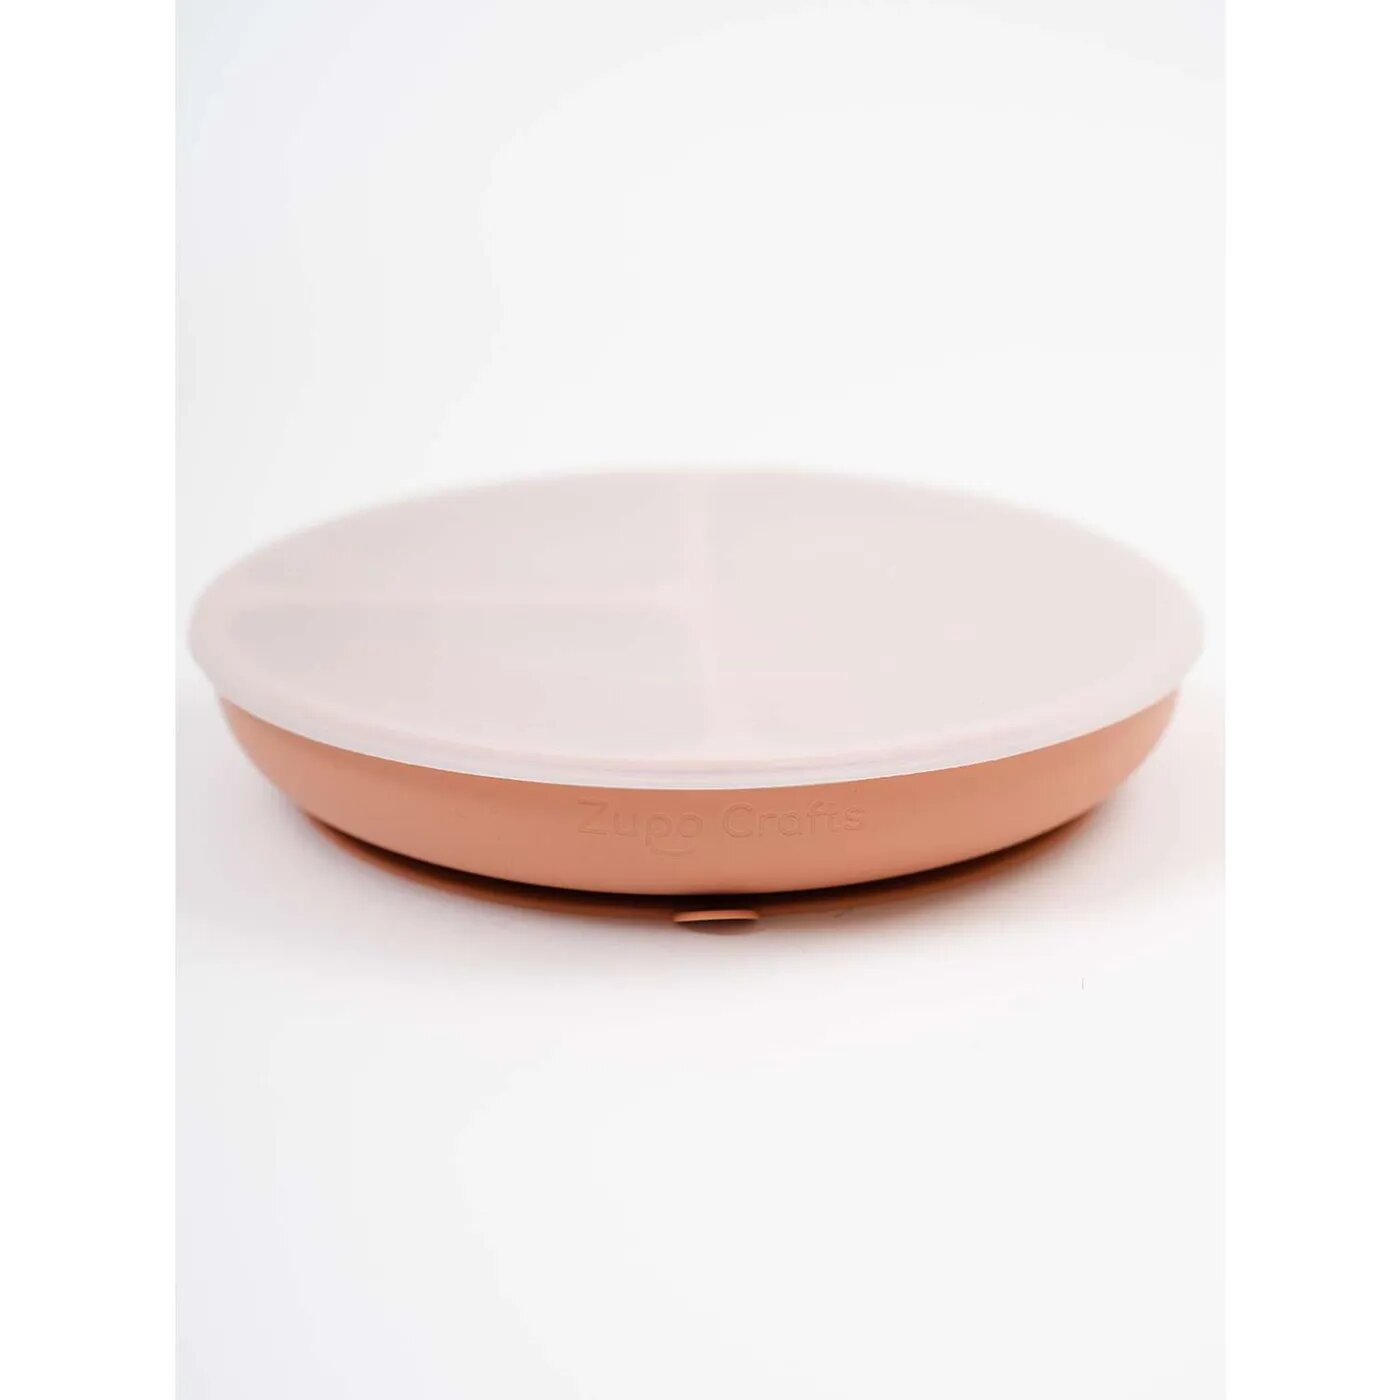 Силиконовая тарелка с крышкой Zupo Crafts тускло-розовый